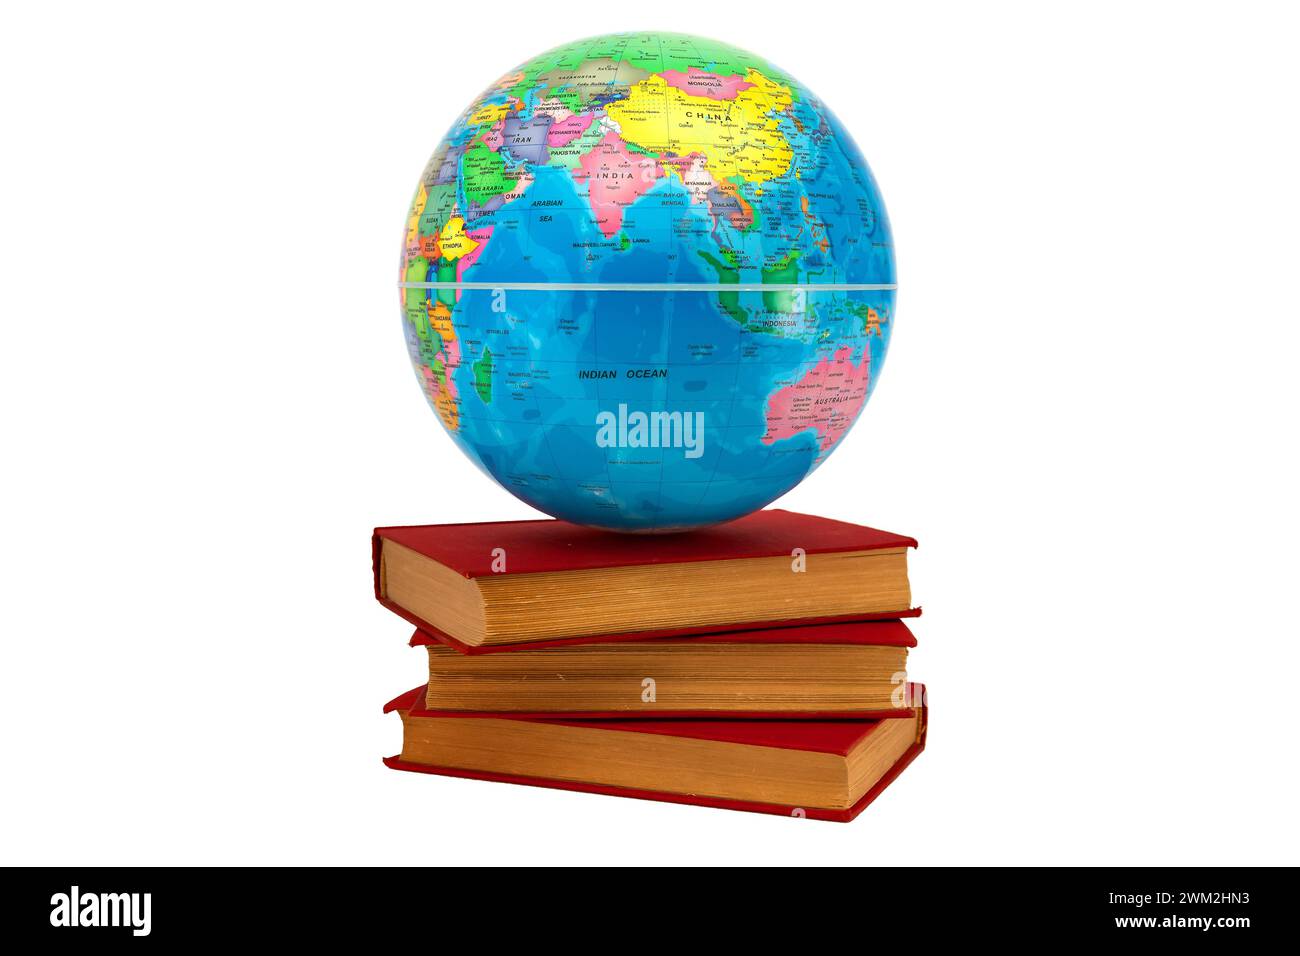 Südhalbkugel des Globus mit einem offenen Buch Where Australia: Bookrest Concept. Die südliche Hemisphäre der Erde unterstützt globale Buchreadin Stockfoto